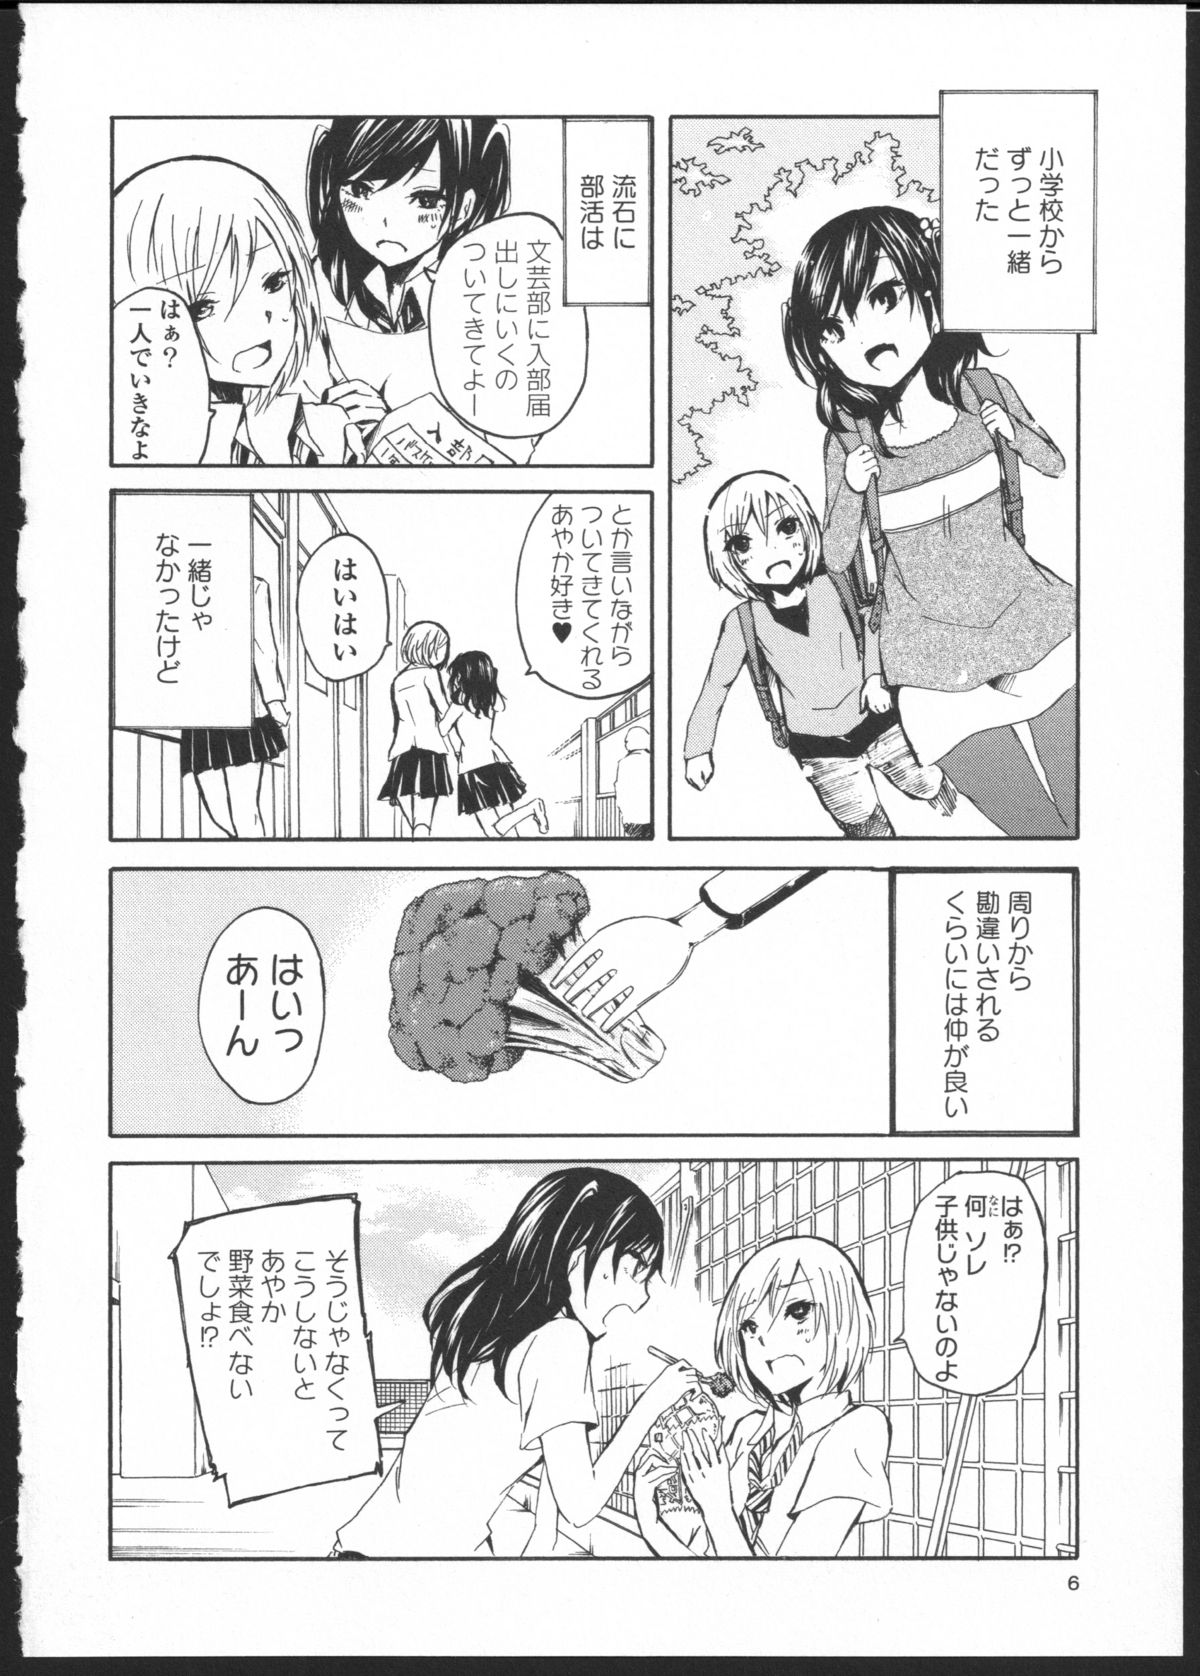 [Kuzushiro] Kimi no Sei Zenpen page 2 full